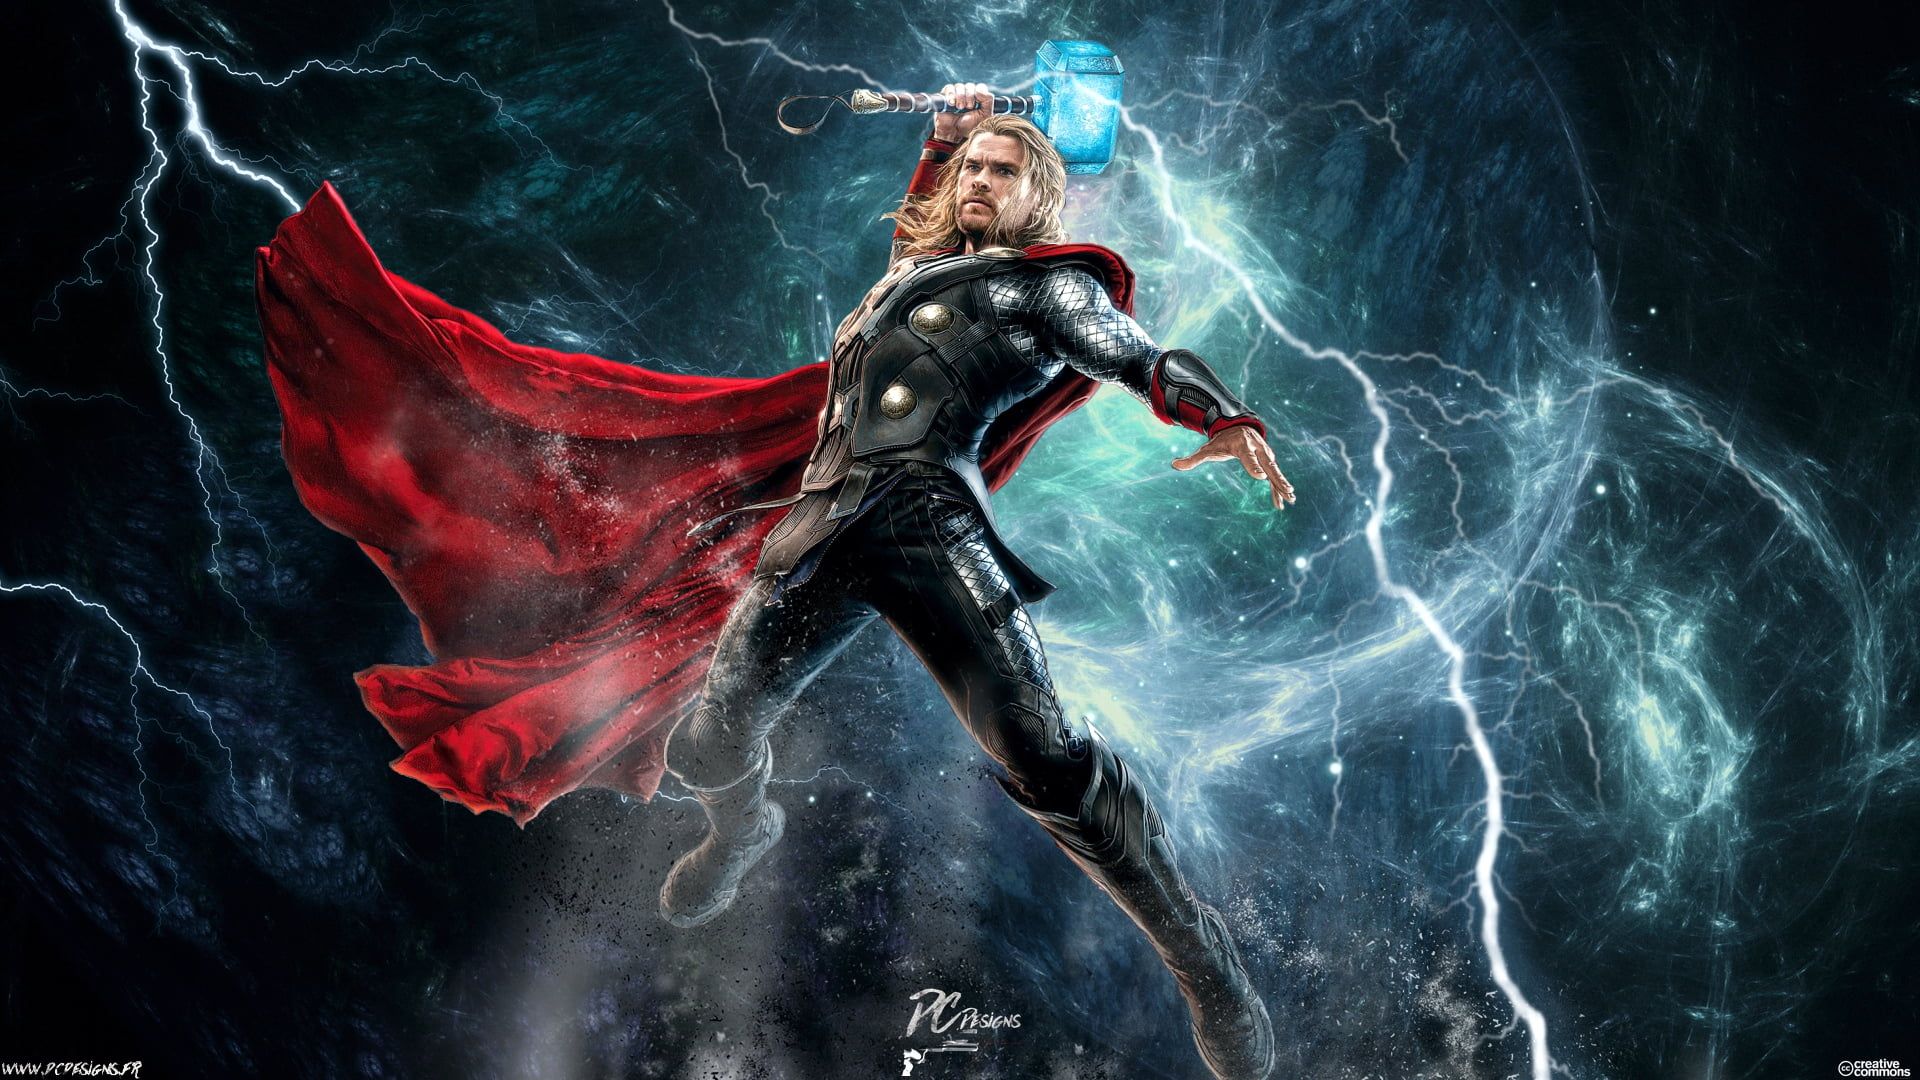 Marvel Thor digital wallpaper, Chris Hemsworth, Marvel Comics • Wallpaper For You HD Wallpaper For Desktop & Mobile